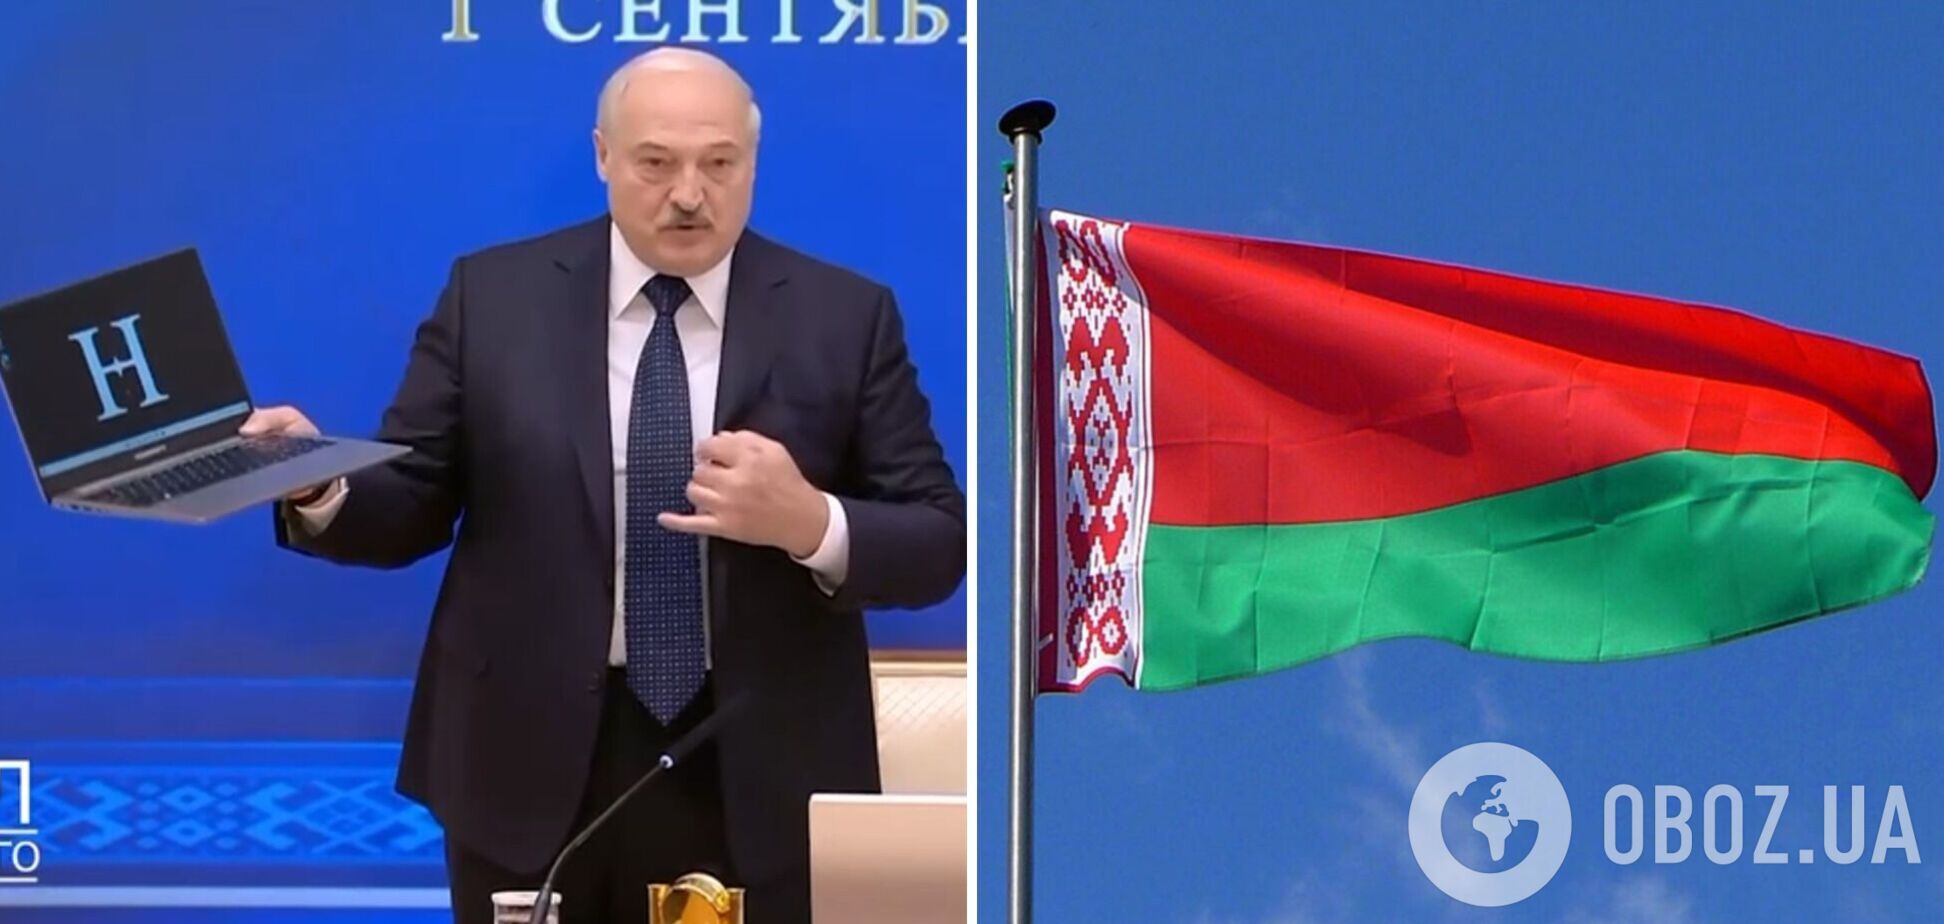 'Белорусского там 12%': Лукашенко насмешил молодежь первым 'отечественным' ноутбуком. Видео